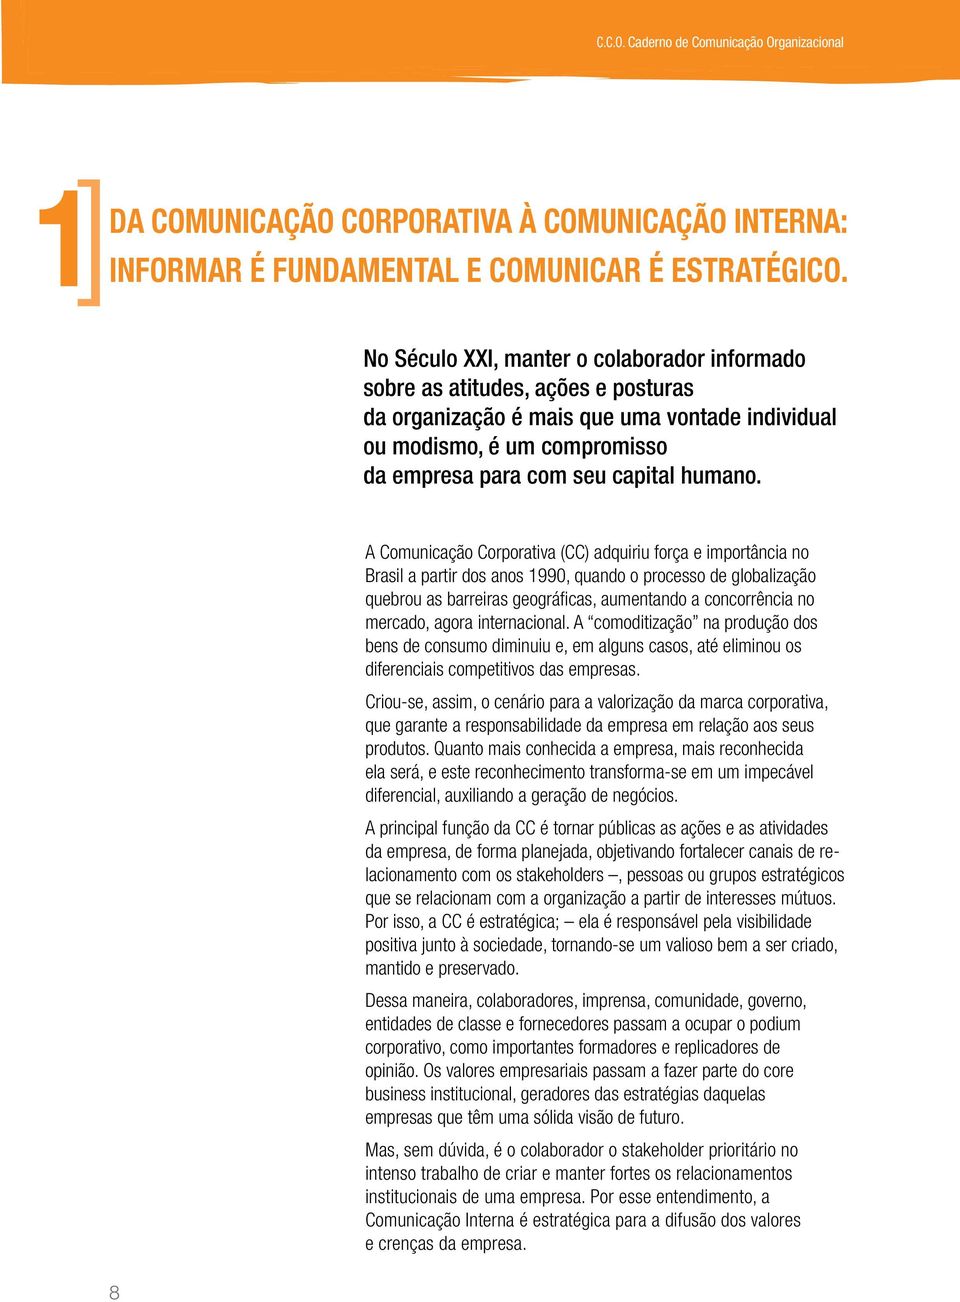 8 A Comunicação Corporativa (CC) adquiriu força e importância no Brasil a partir dos anos 1990, quando o processo de globalização quebrou as barreiras geográficas, aumentando a concorrência no